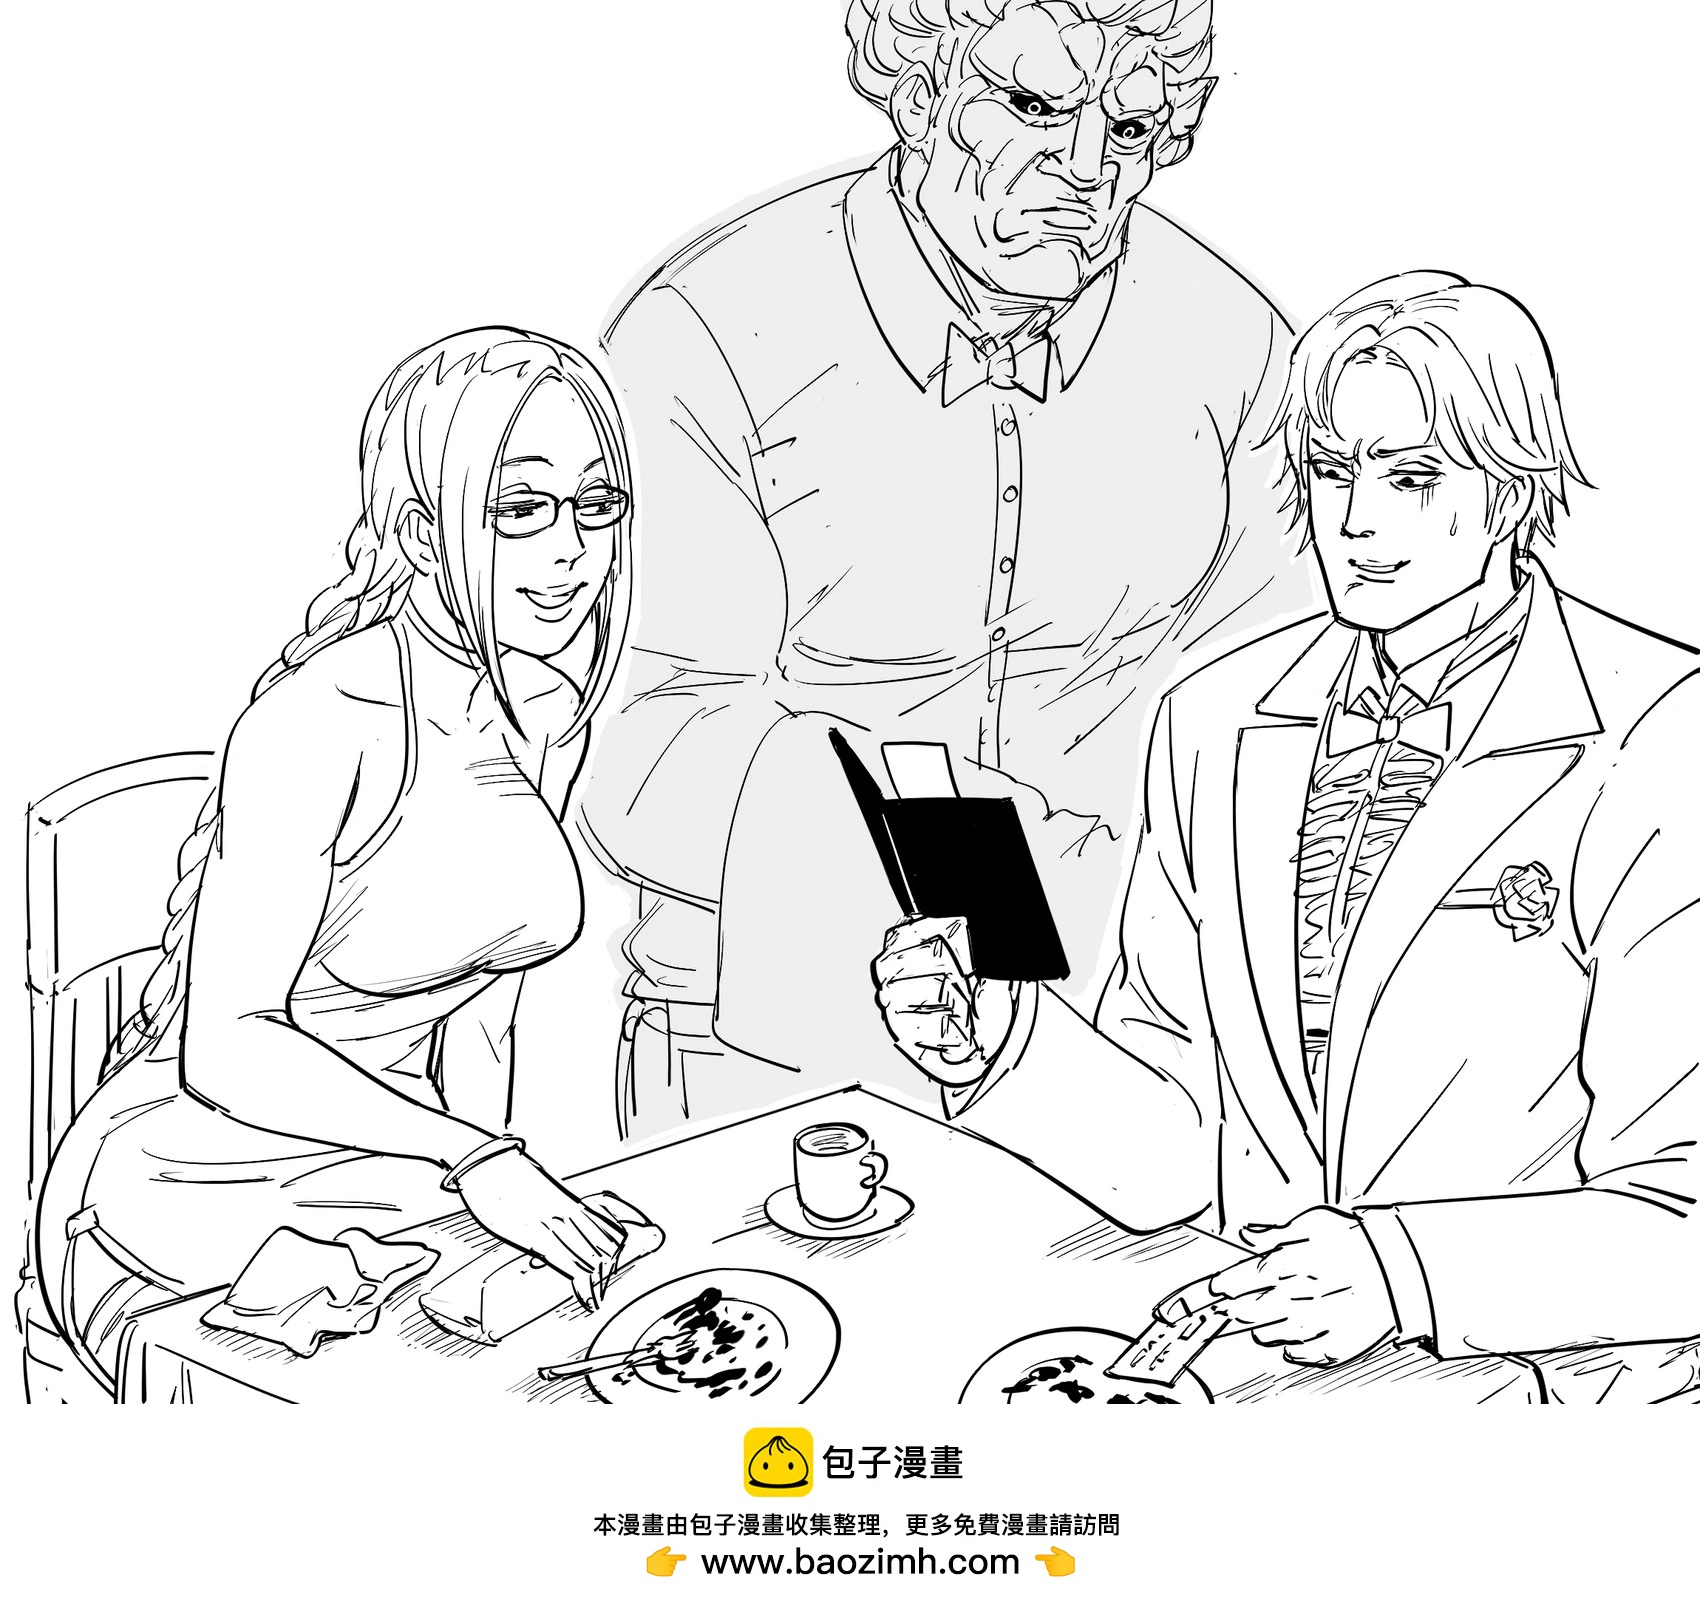 Baalbuddy漫畫小短篇 - 《鐵拳》李超狼和茱莉亞在餐館約會花了7000美元 - 1